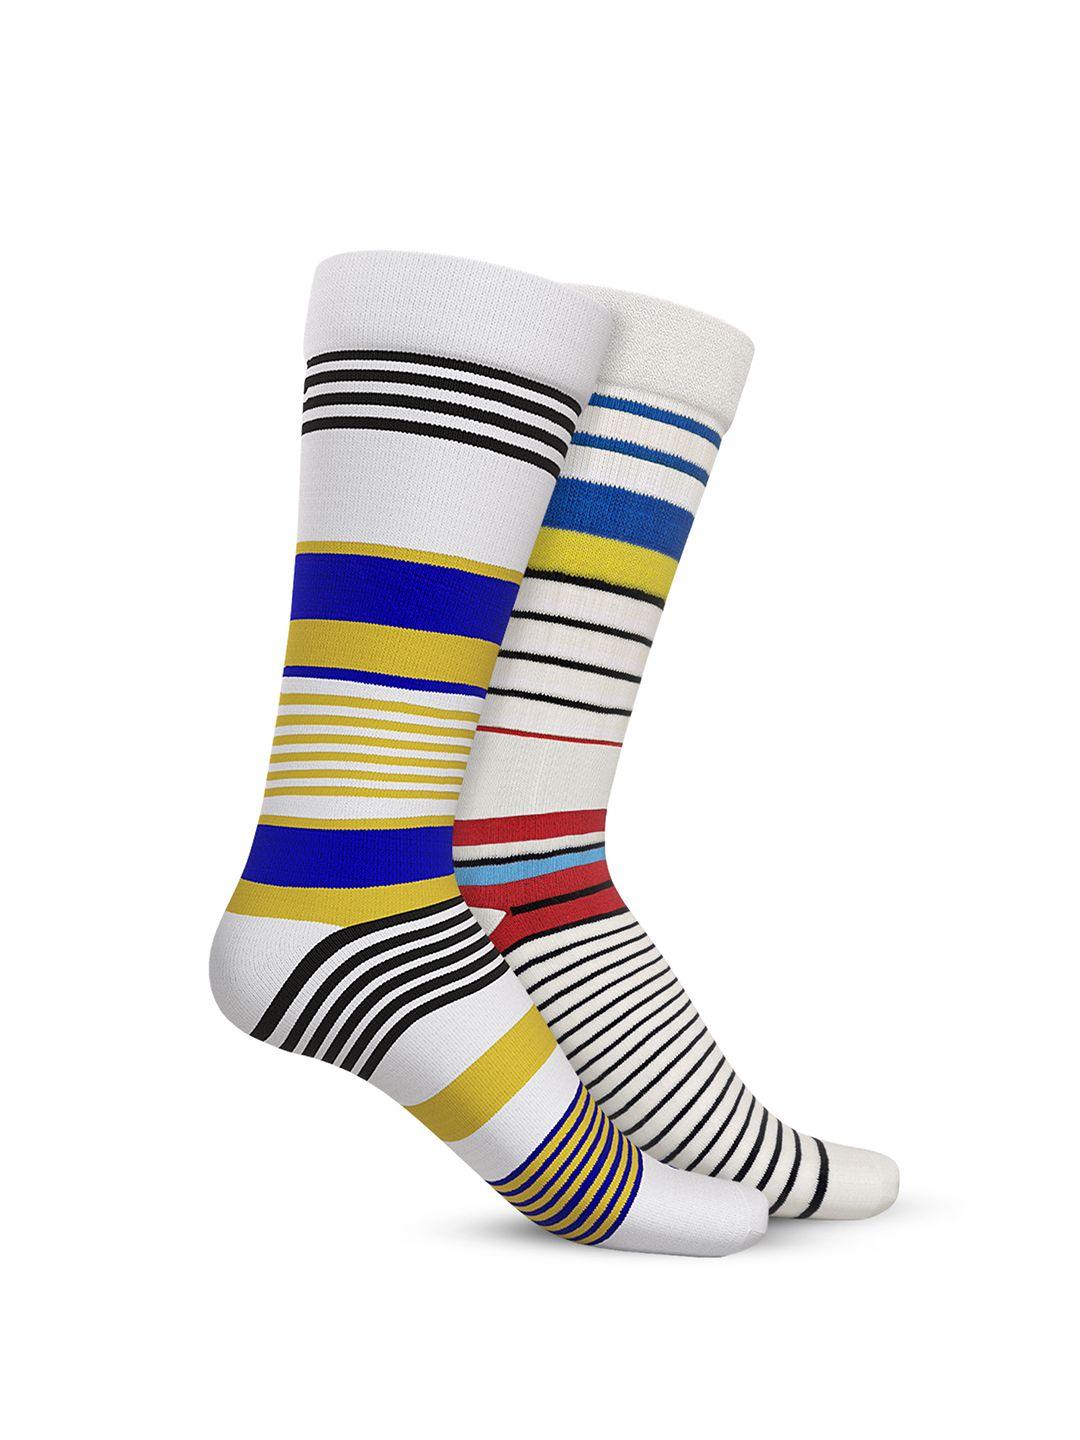 talkingsox pack of 2 striped calf length socks